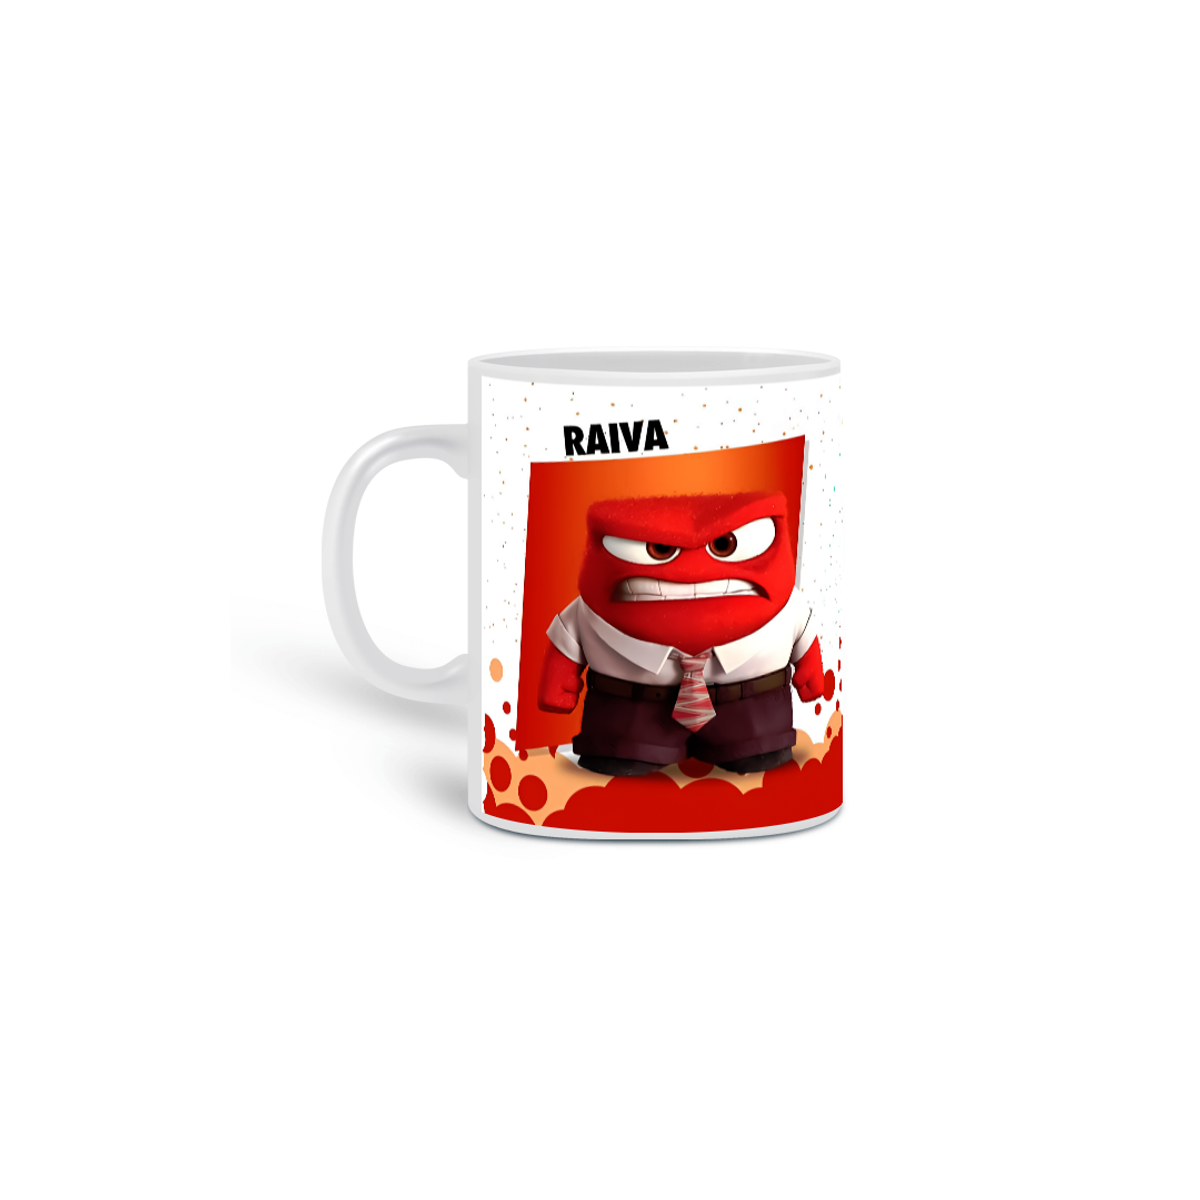 Nome do produto: Caneca Café (RAIVA)